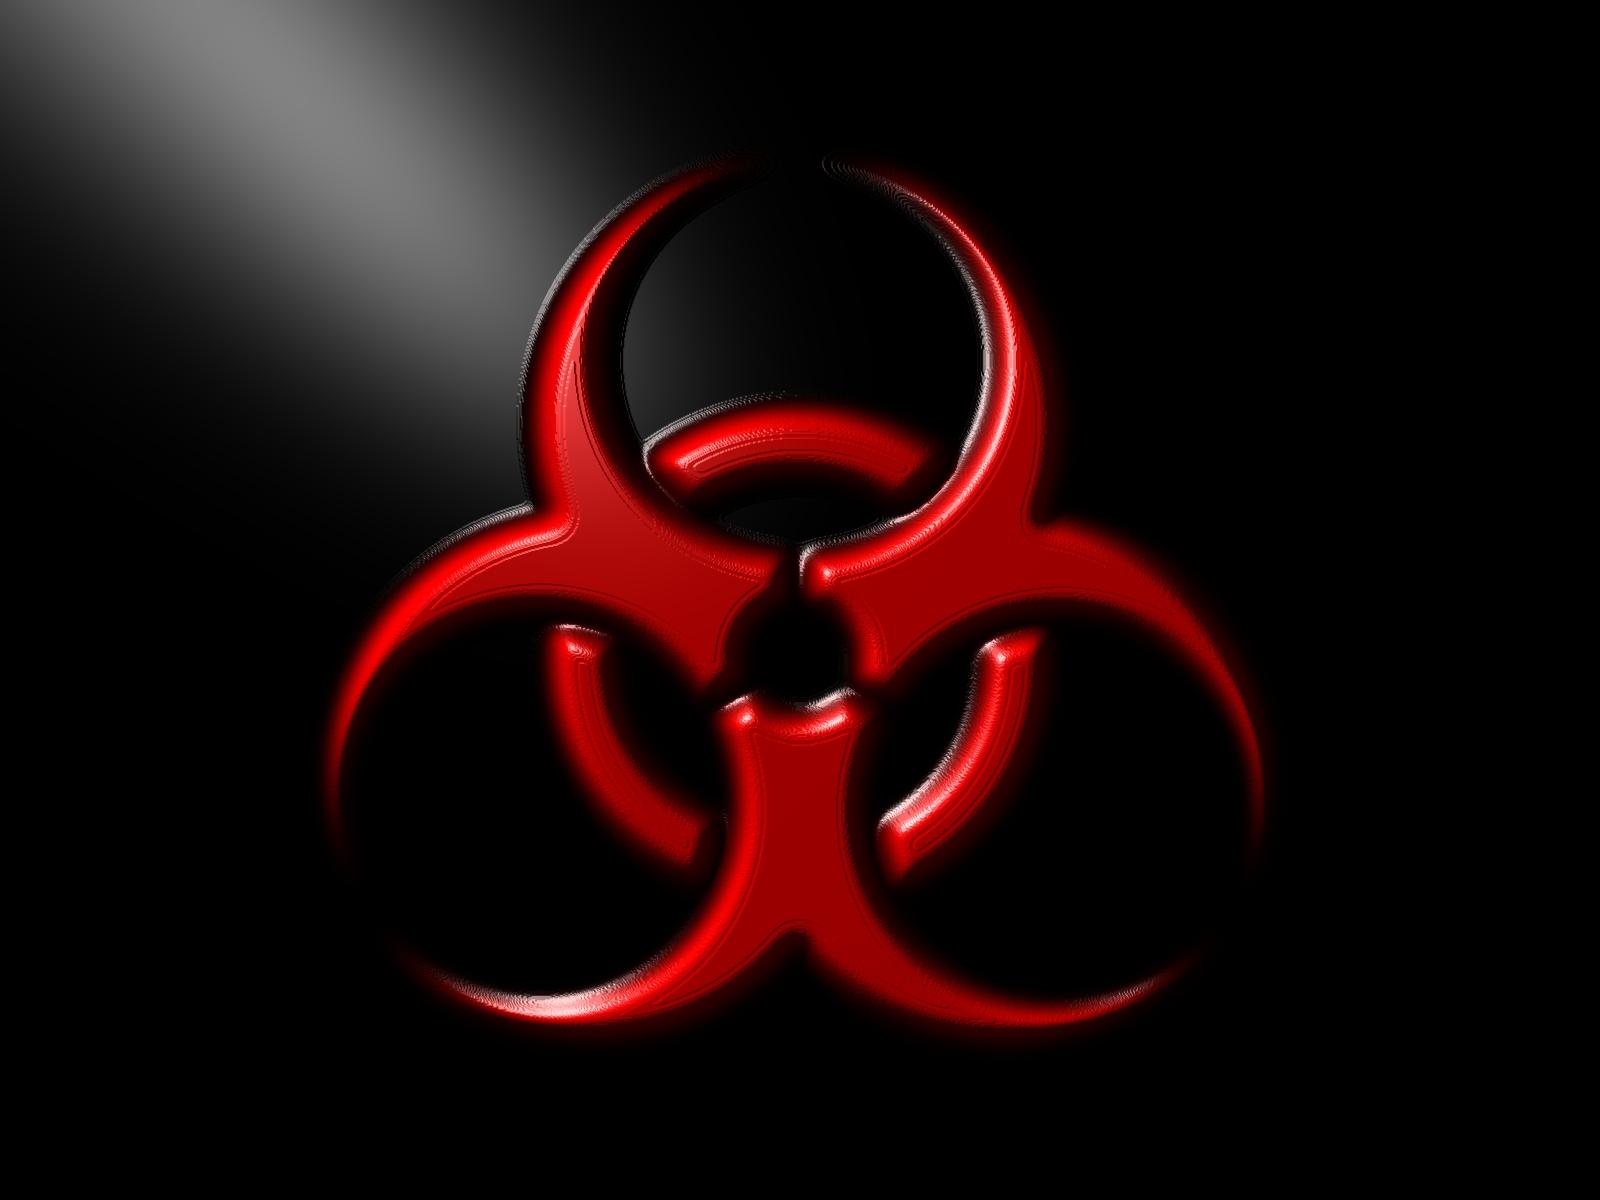 Biohazard Symbol Background Download Free